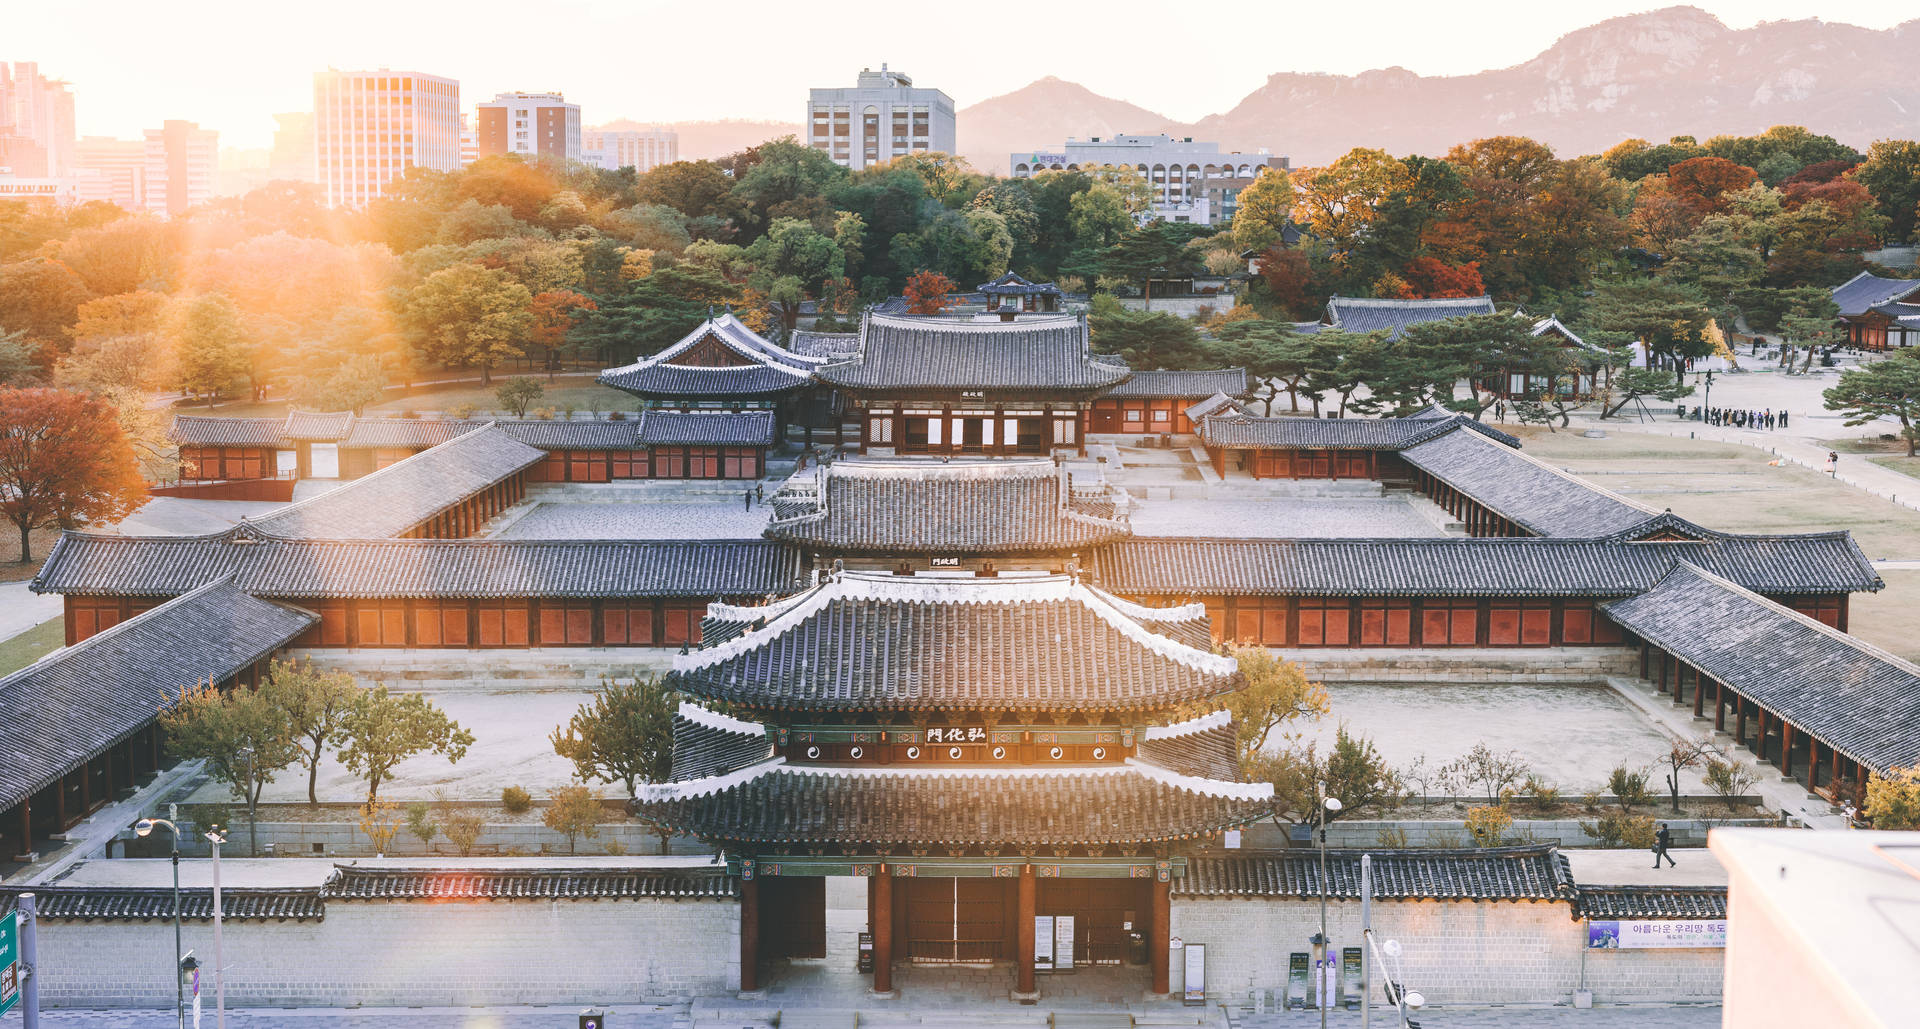 Seoul Changdeokgung Palace Sunrise